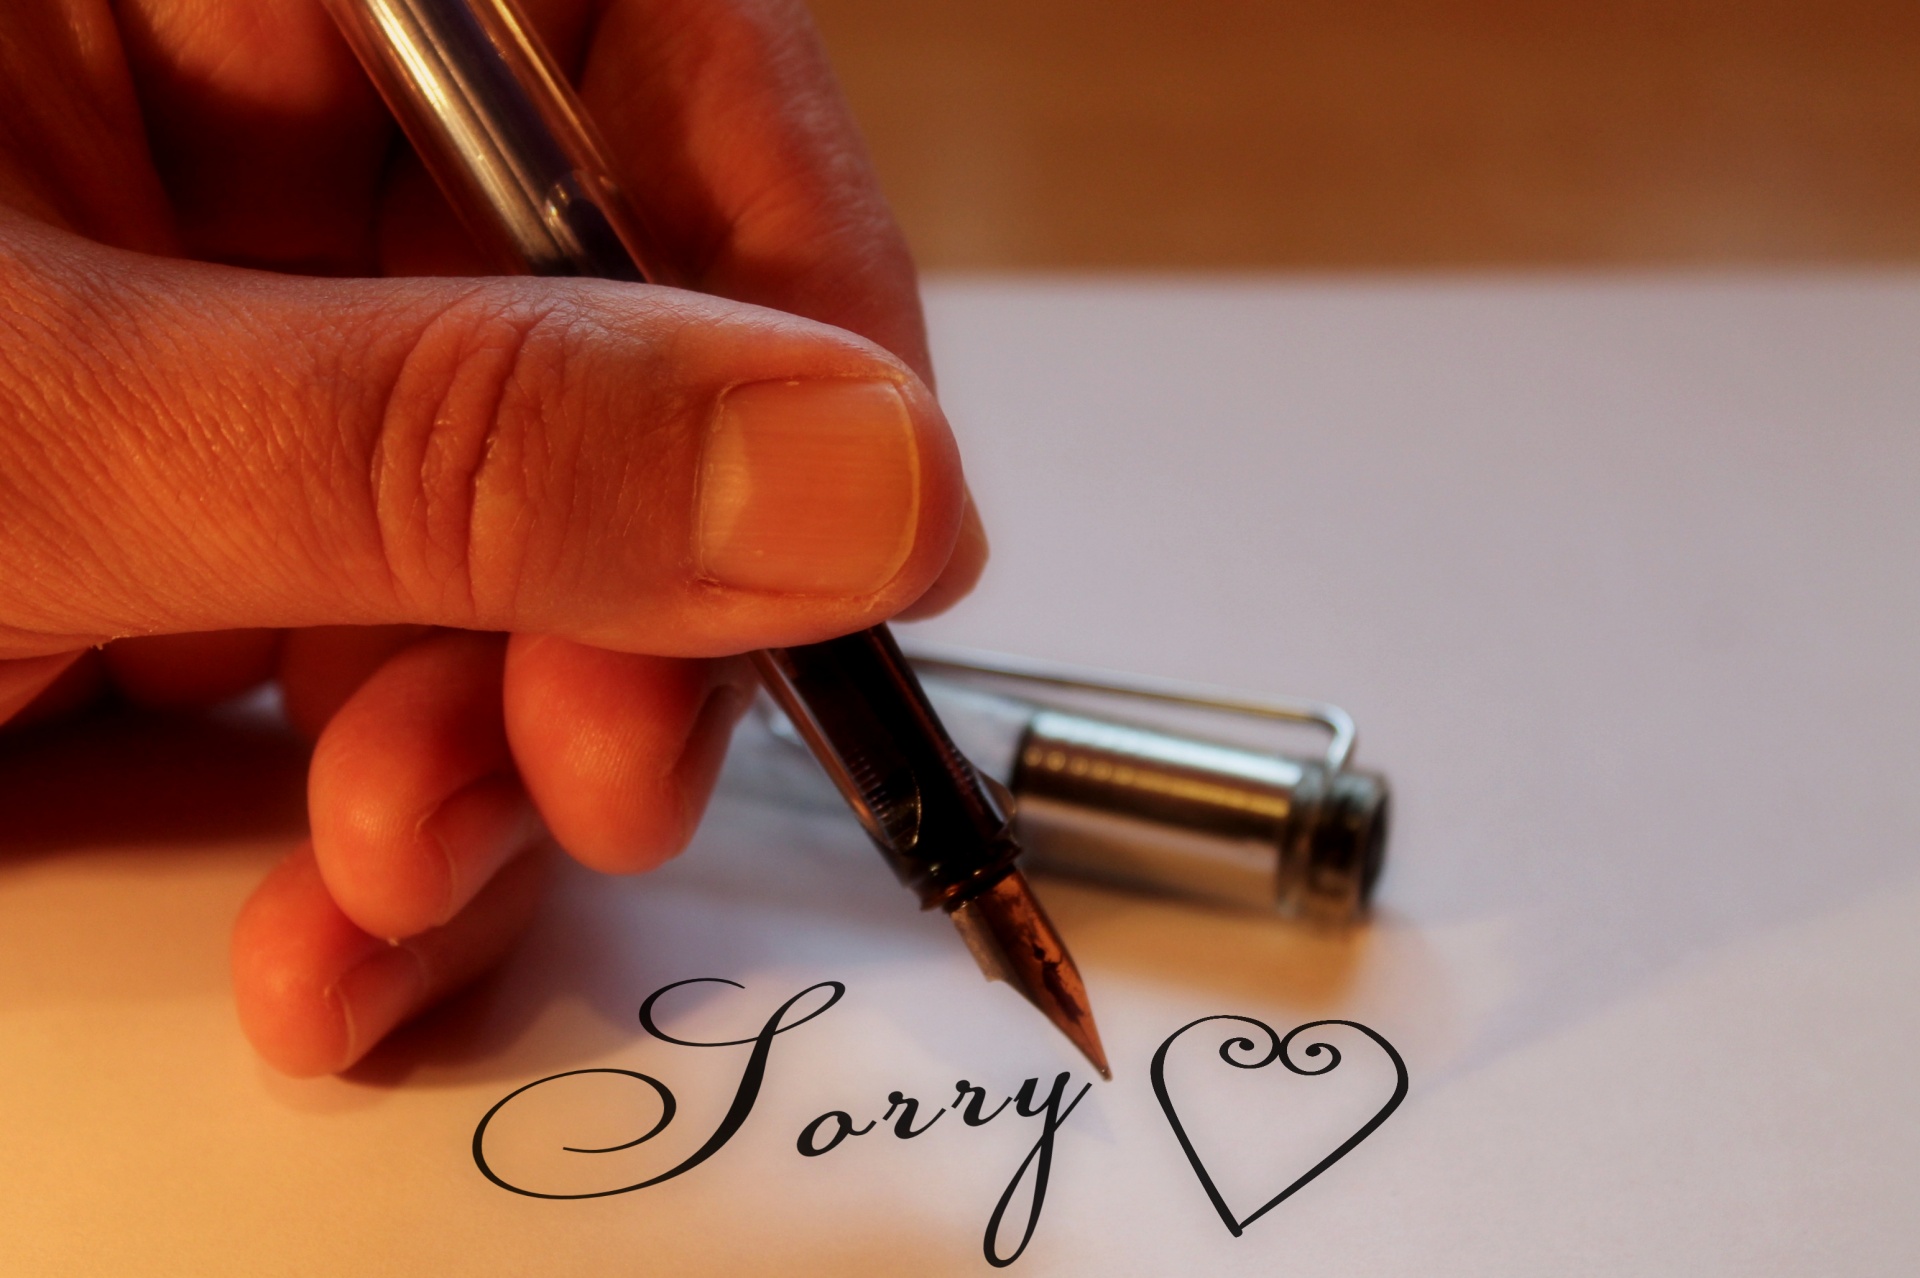 Write sorry